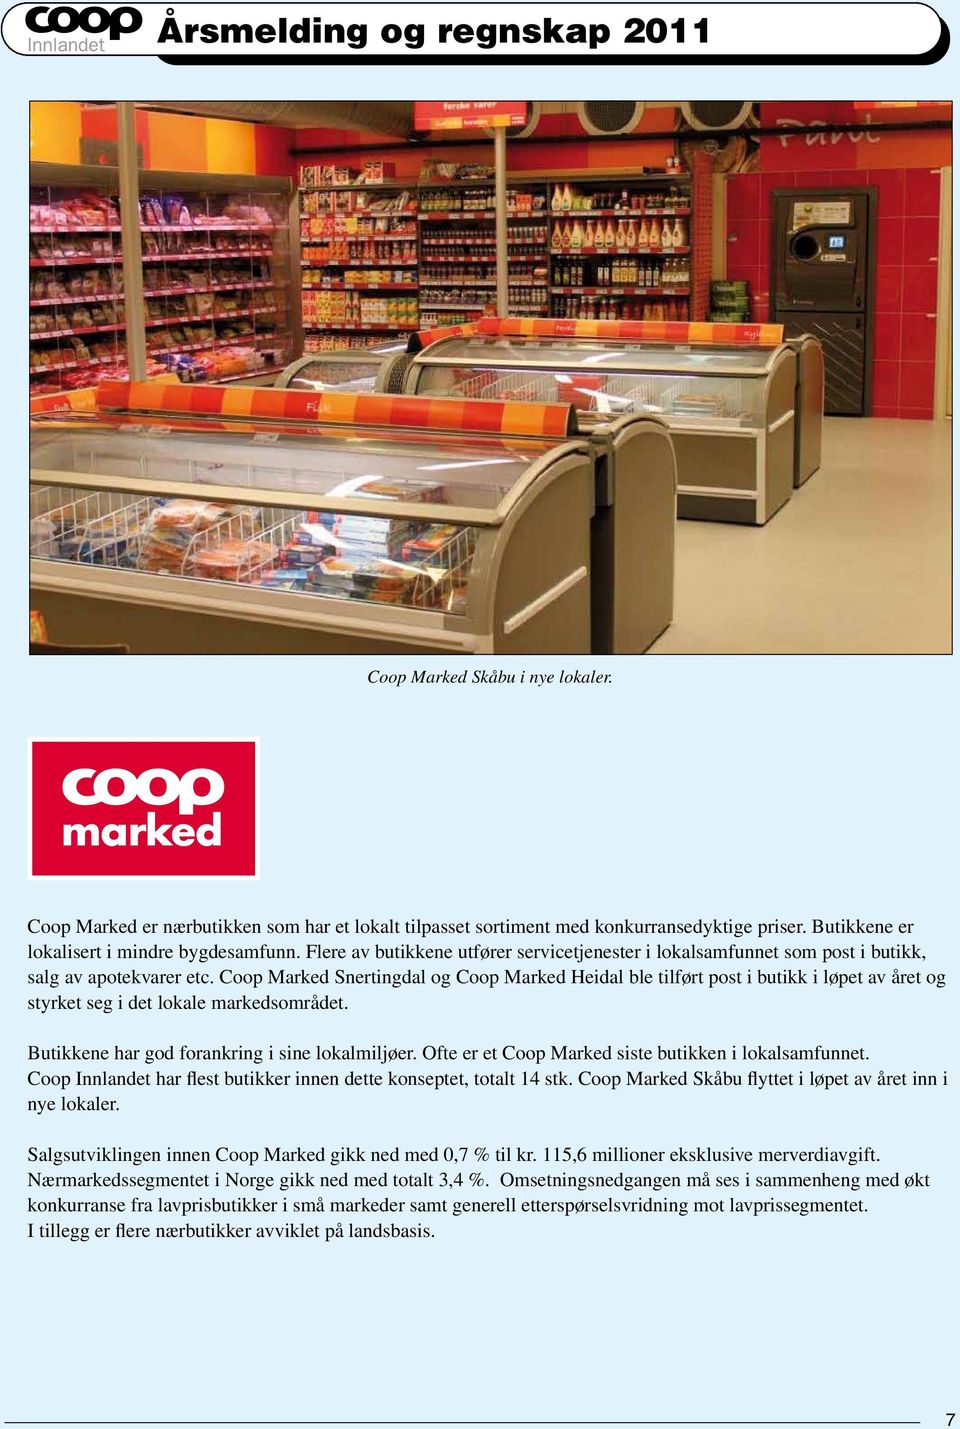 Coop Marked Snertingdal og Coop Marked Heidal ble tilført post i butikk i løpet av året og styrket seg i det lokale markedsområdet. Butikkene har god forankring i sine lokalmiljøer.